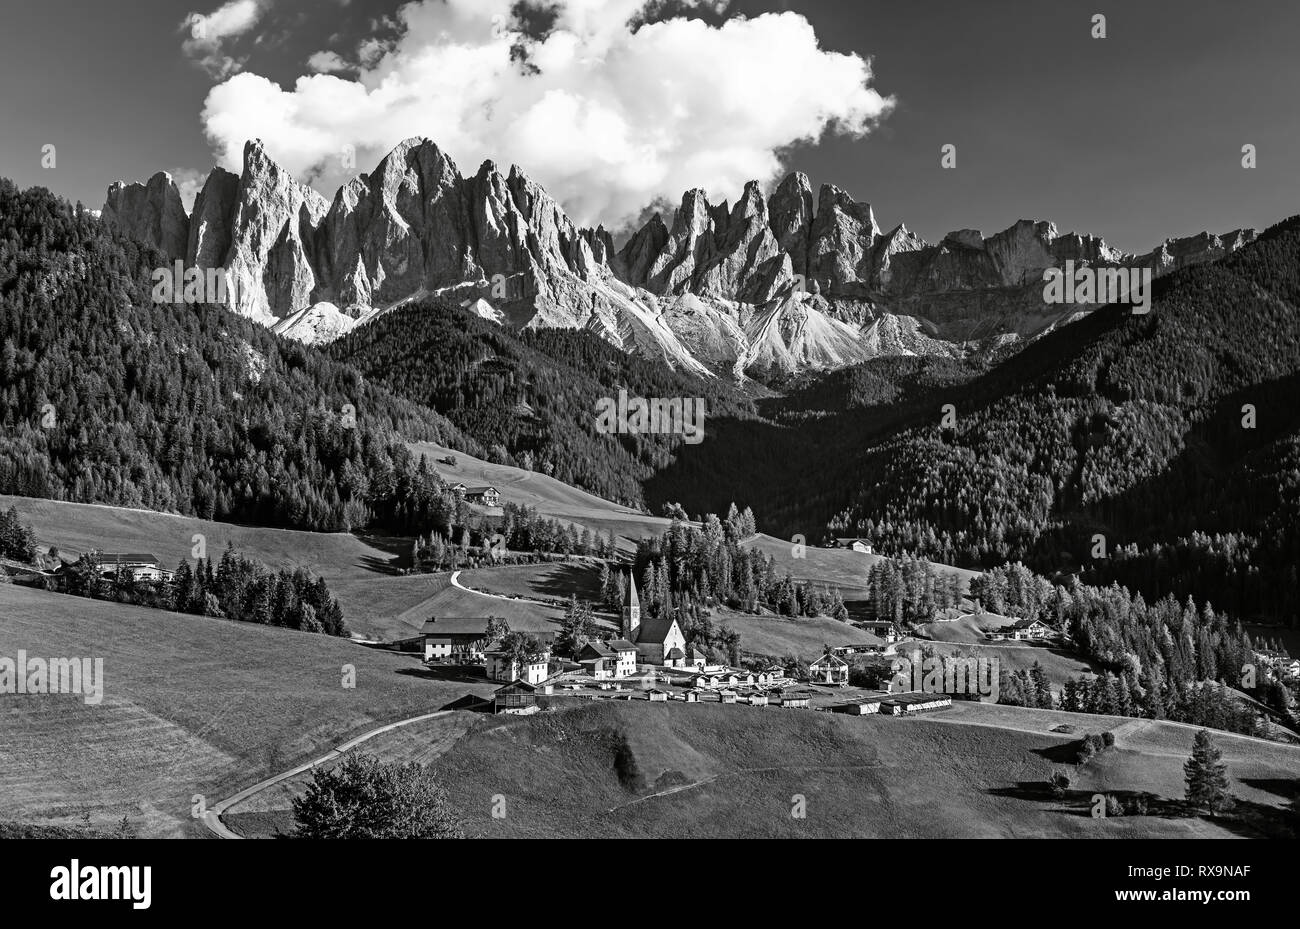 Célèbre village alpin place Santa Maddalena avec magical Dolomites montagnes en arrière-plan, Val di Funes, vallée de la région Trentin-Haut-Adige, Italie Banque D'Images